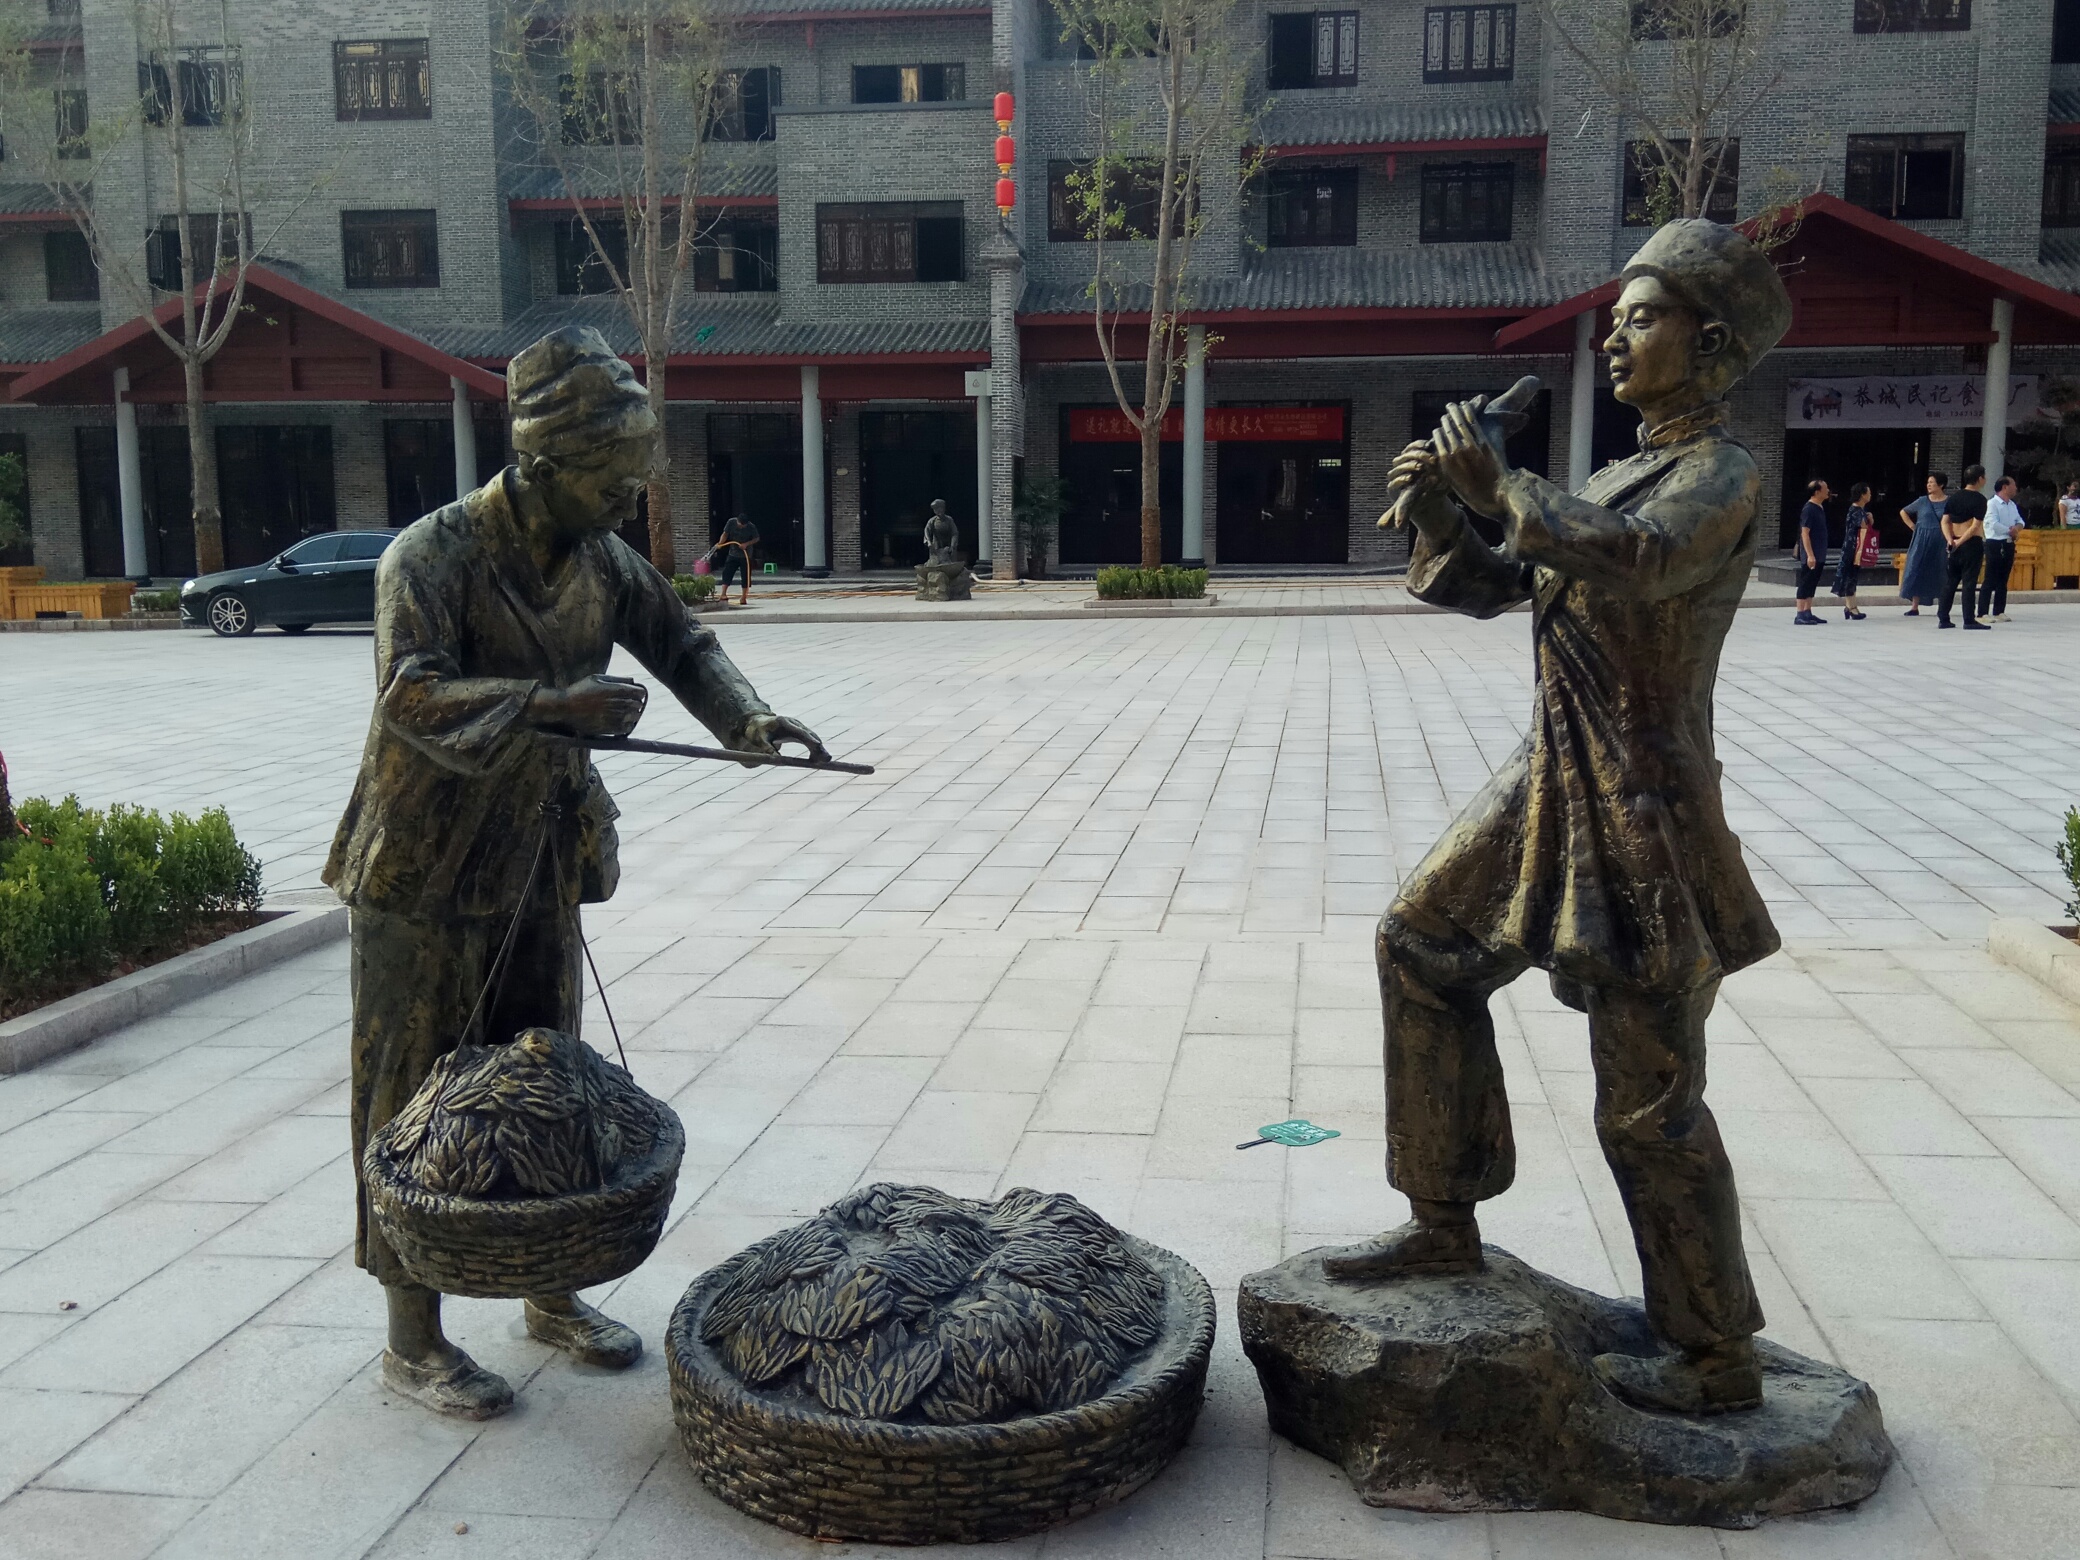 ——油茶小镇的瑶人雕塑985 / 作者:力行者 / 帖子ID:276336